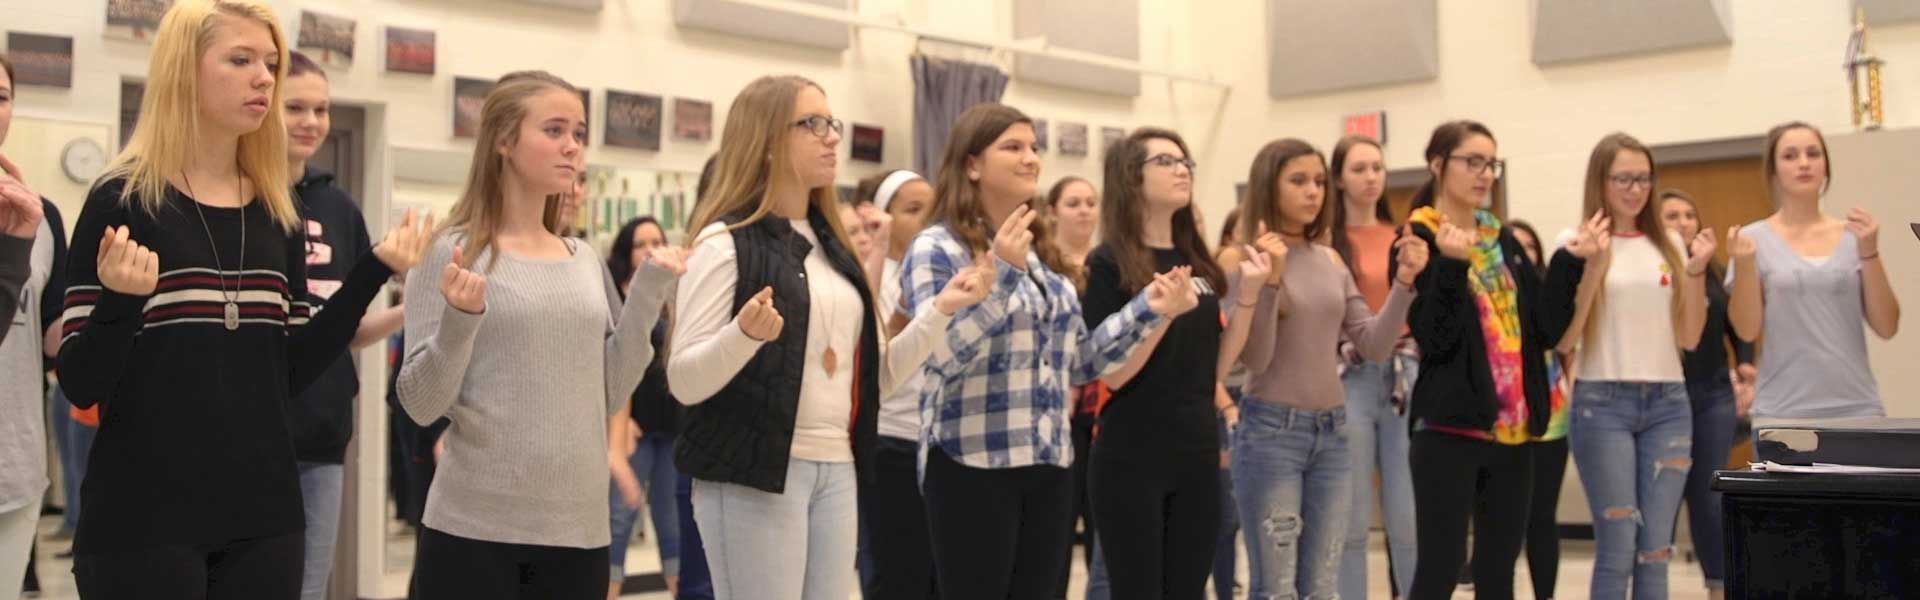 East Central High School Choir Practice